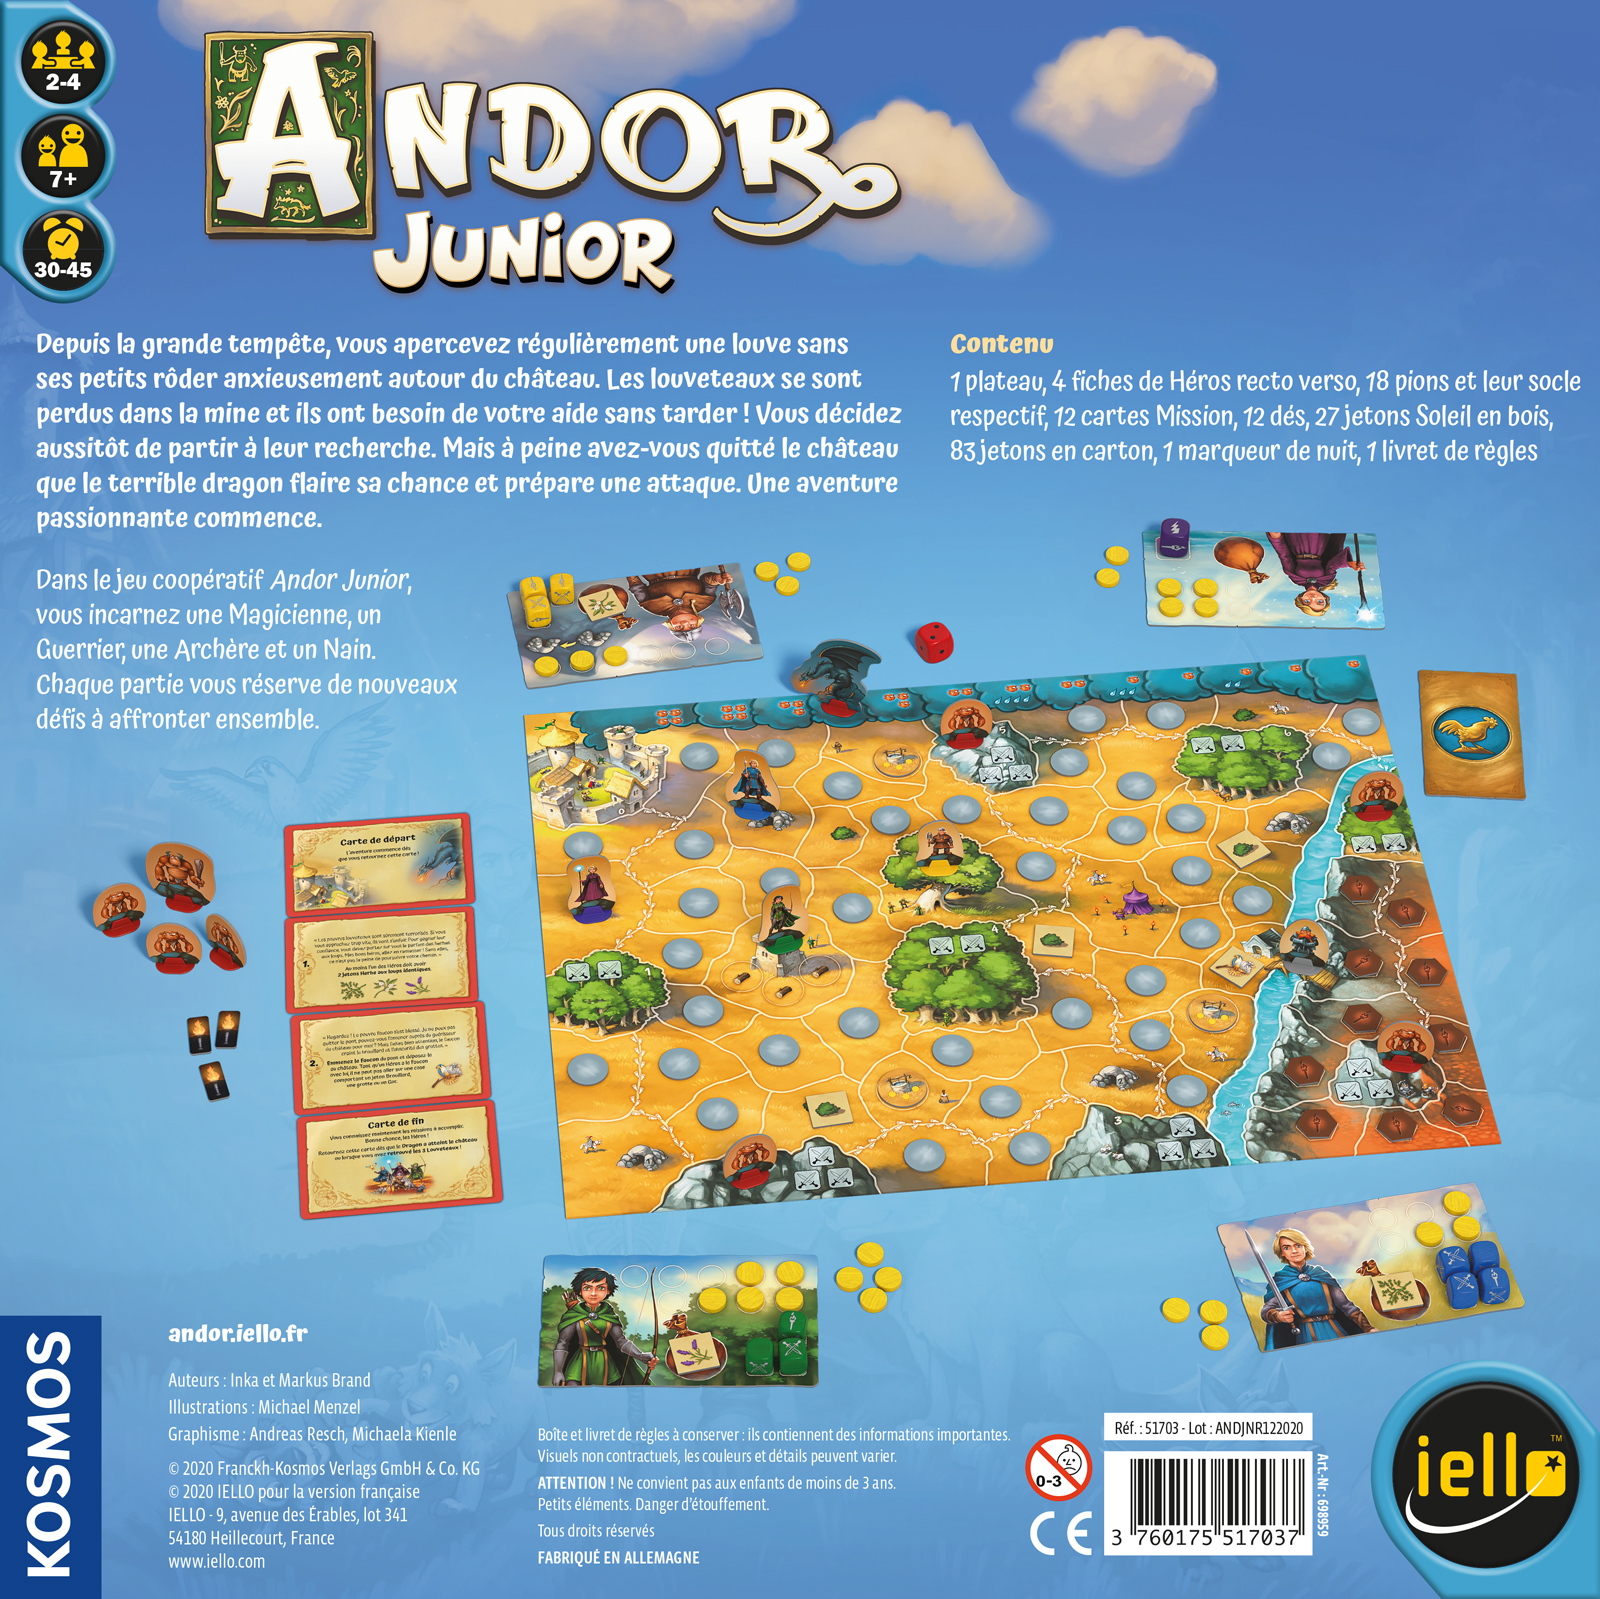 Andor-Junior_BoxBottom